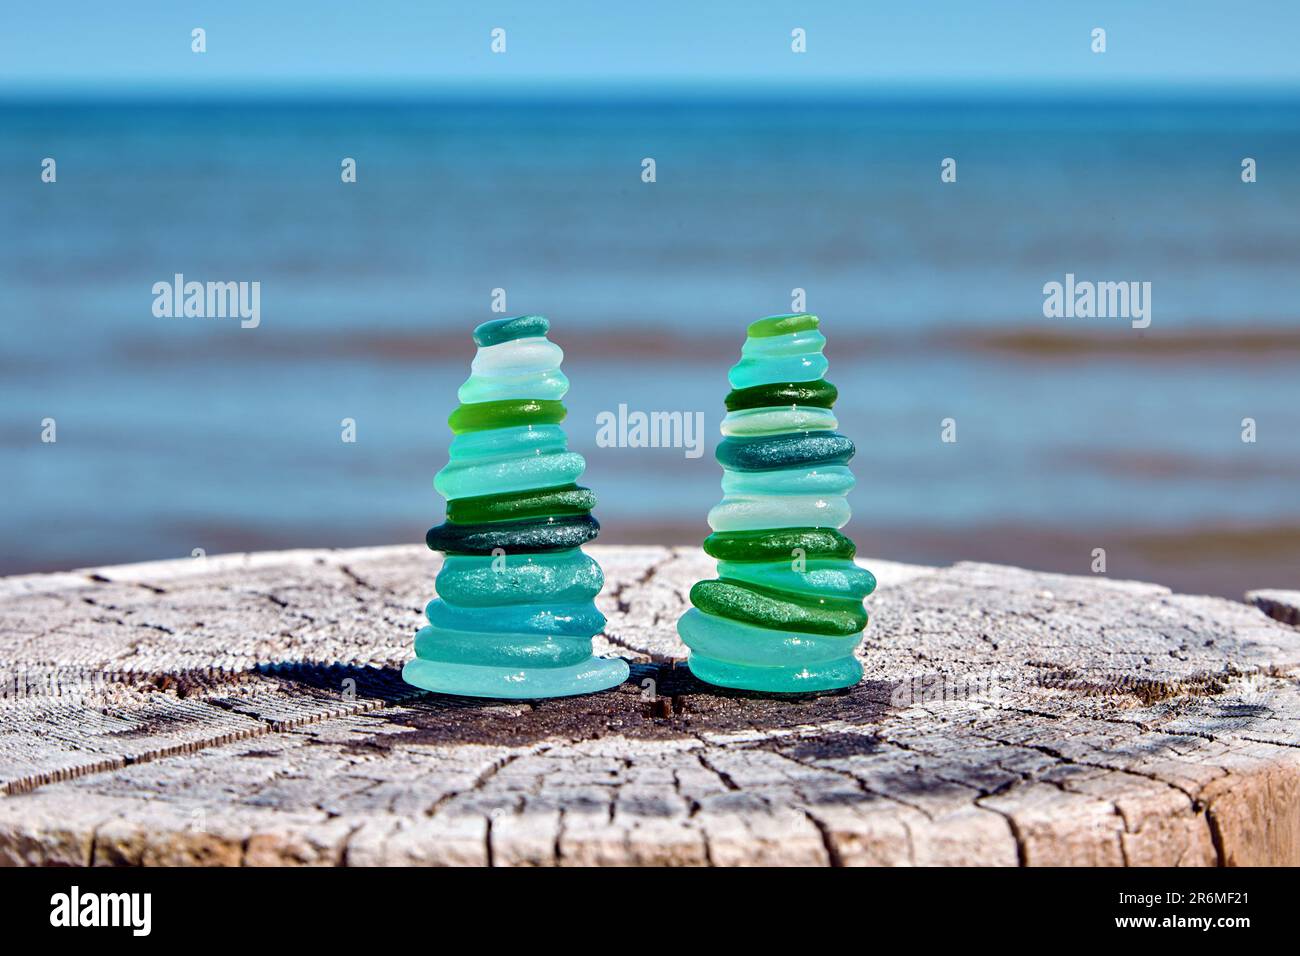 Deux pyramides équilibrées de fragments humides et polies de la mer d'une bouteille en verre bleu et vert sur un tronc en bois abîmé coupé contre la mer Banque D'Images